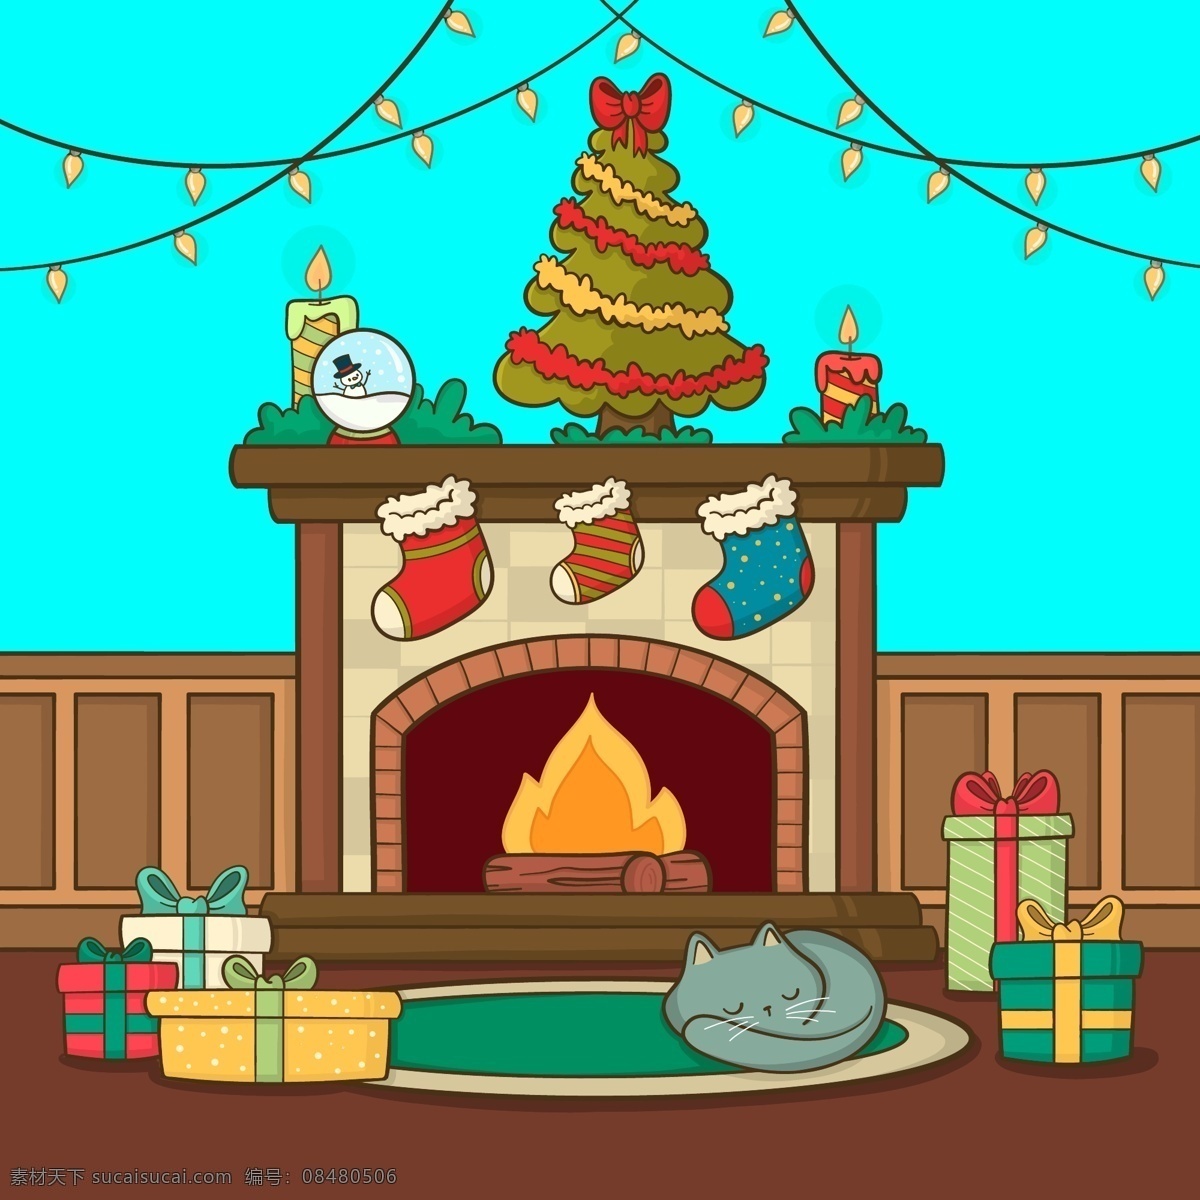 圣诞 壁炉 场景 背景 圣诞节 节日 猫 礼物 圣诞树 过节 庆祝 狂欢 西方节日 假期 扁平 矢量 卡通